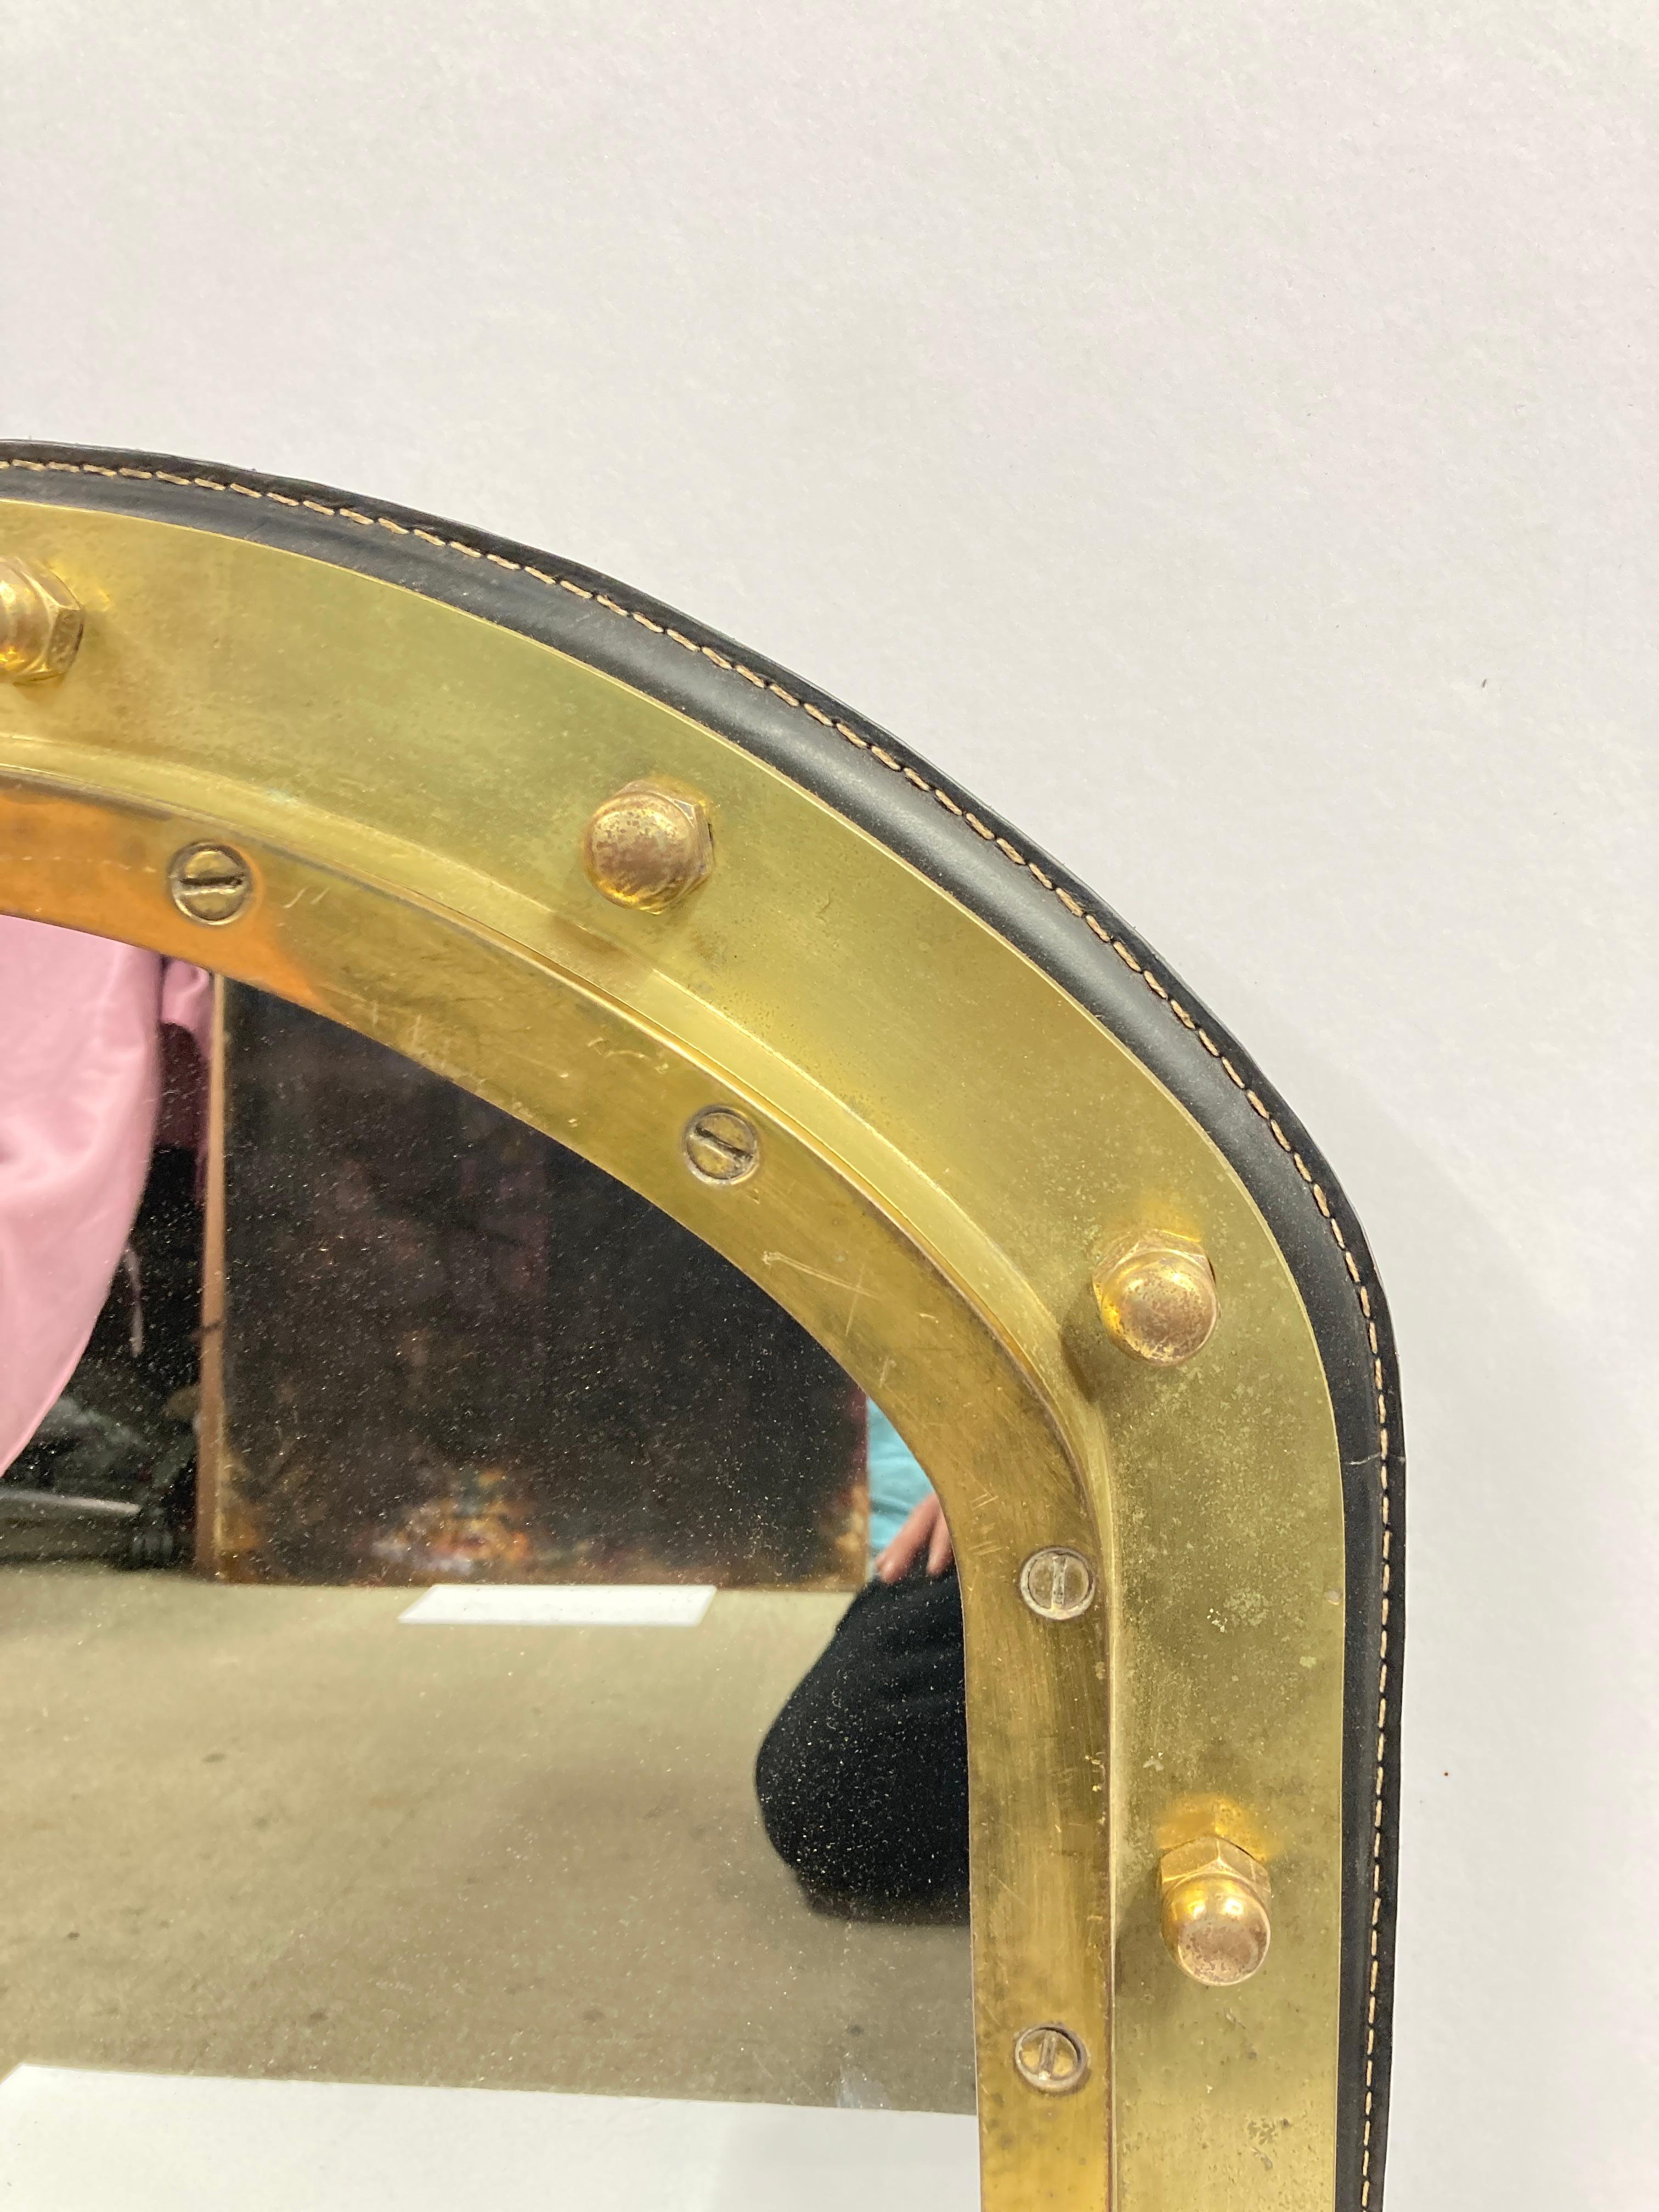 Miroir Hublot des années 1950 en cuir piqué et bronze massif par Jacques Adnet
France
Trace d'oxydation sur le bronze
Très bon état général